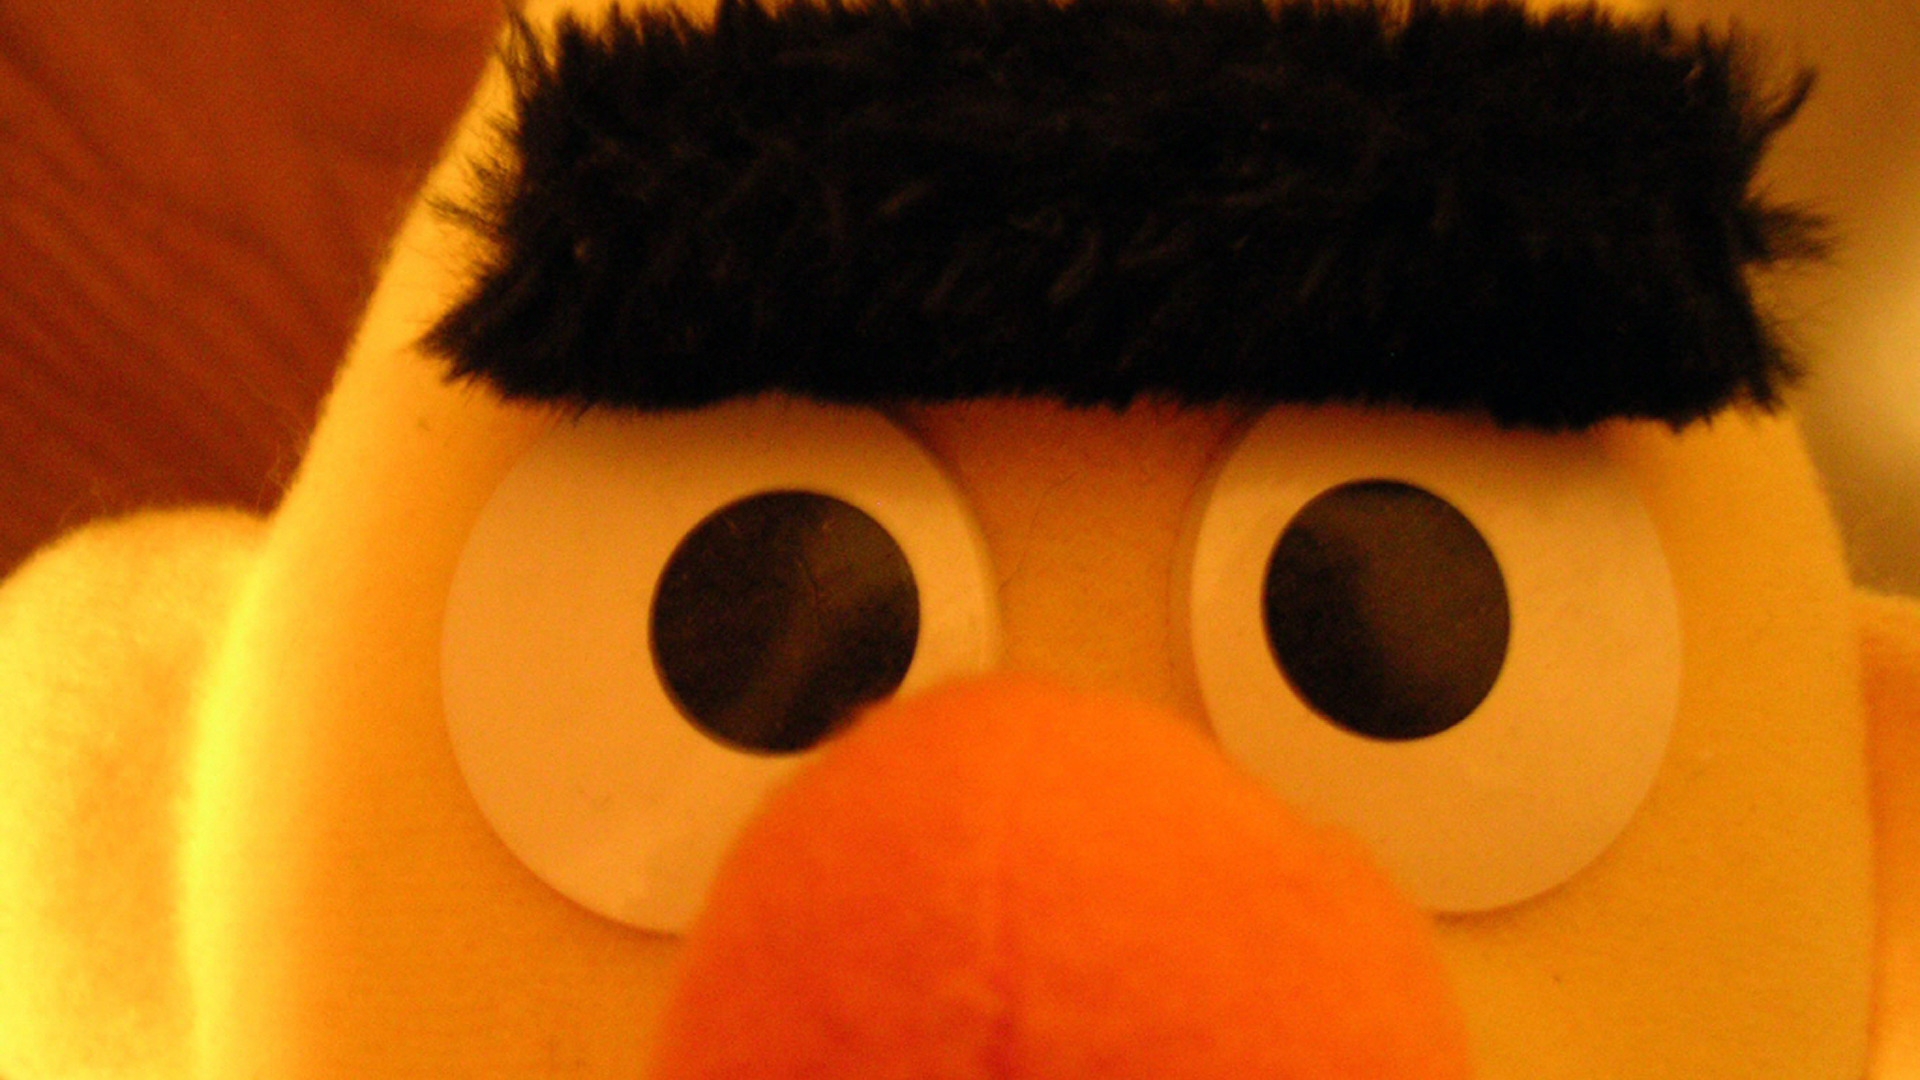 Sesame Street Ernie for 1920 x 1080 HDTV 1080p resolution